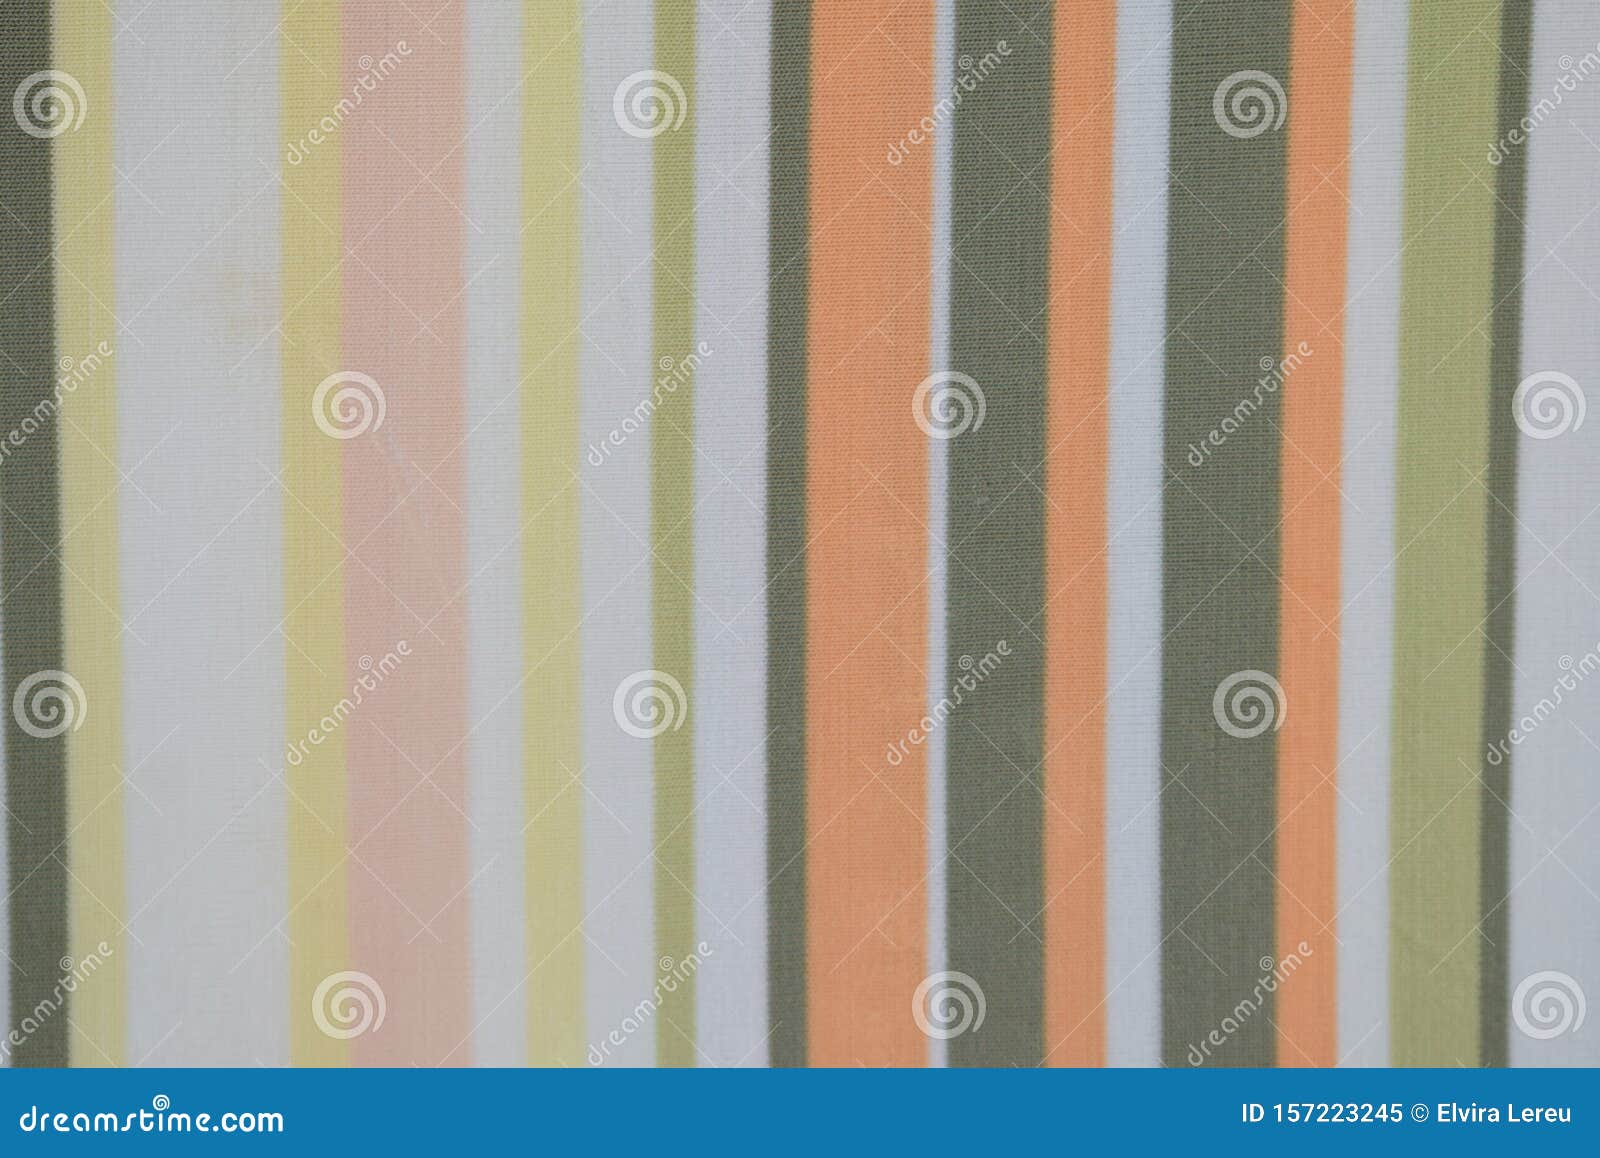 tejido de rayas verticales sin costuras y varios colores